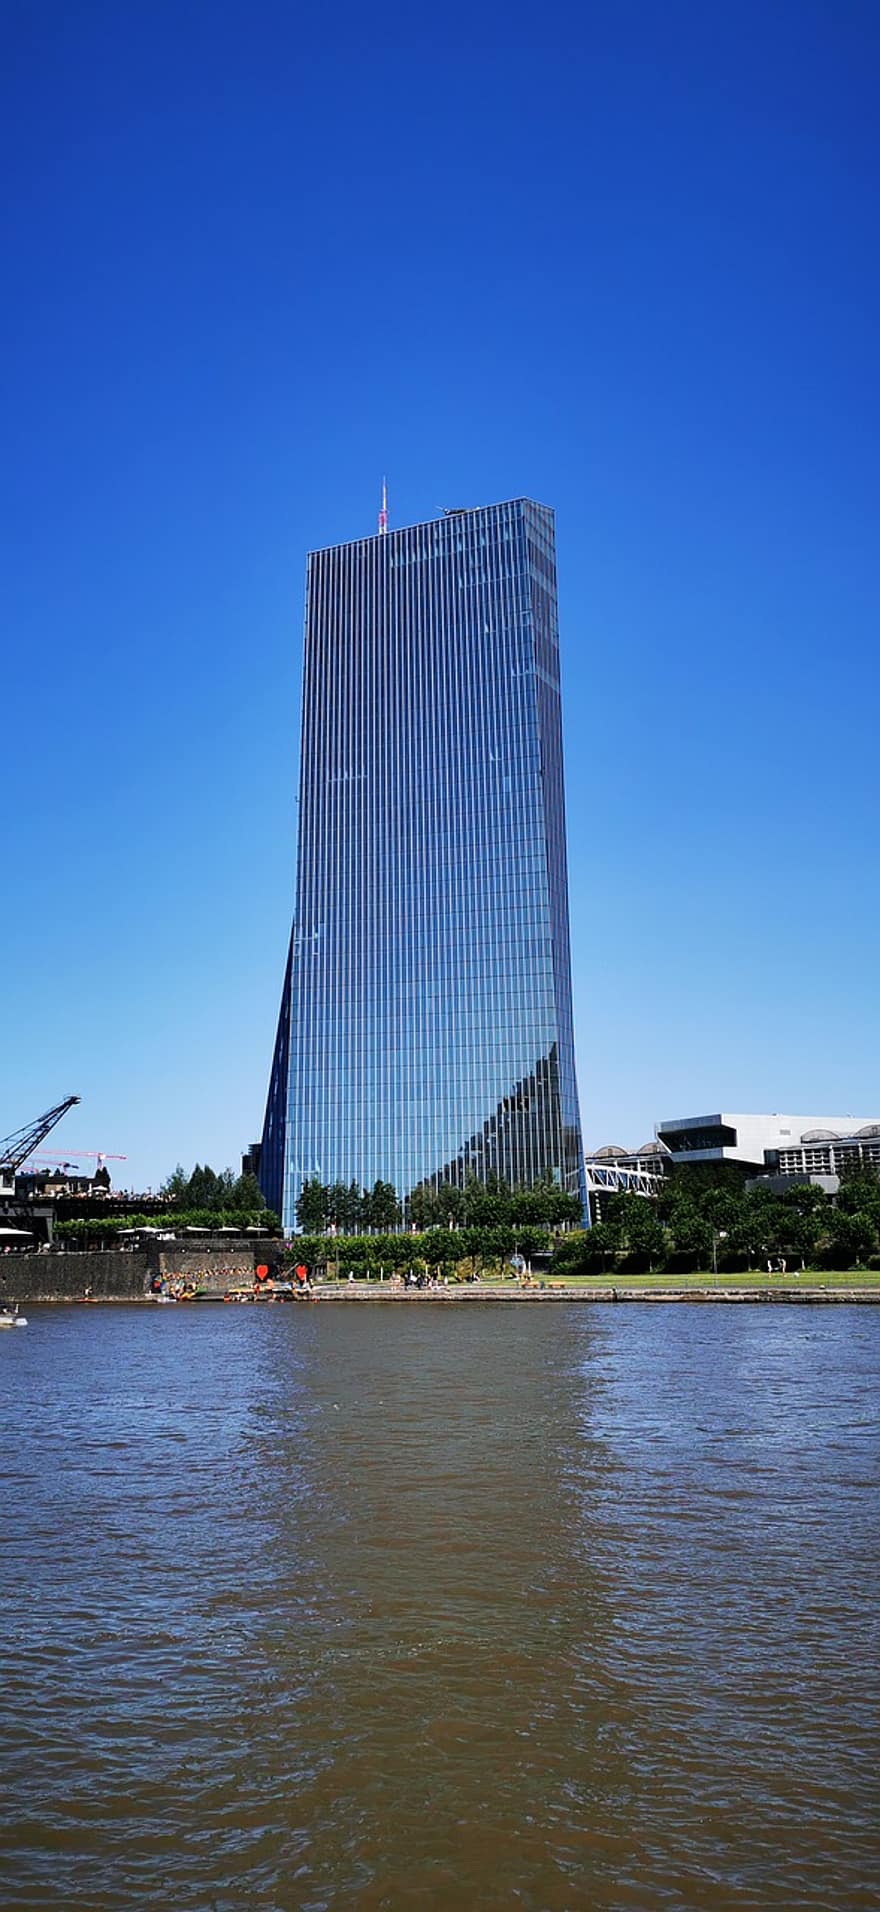 البنك المركزي الأوروبي ، بناء ، نهر ، فرانكفورت ، ألمانيا ، مبنى زجاجي ، ناطحة سحاب ، هندسة معمارية ، مدينة